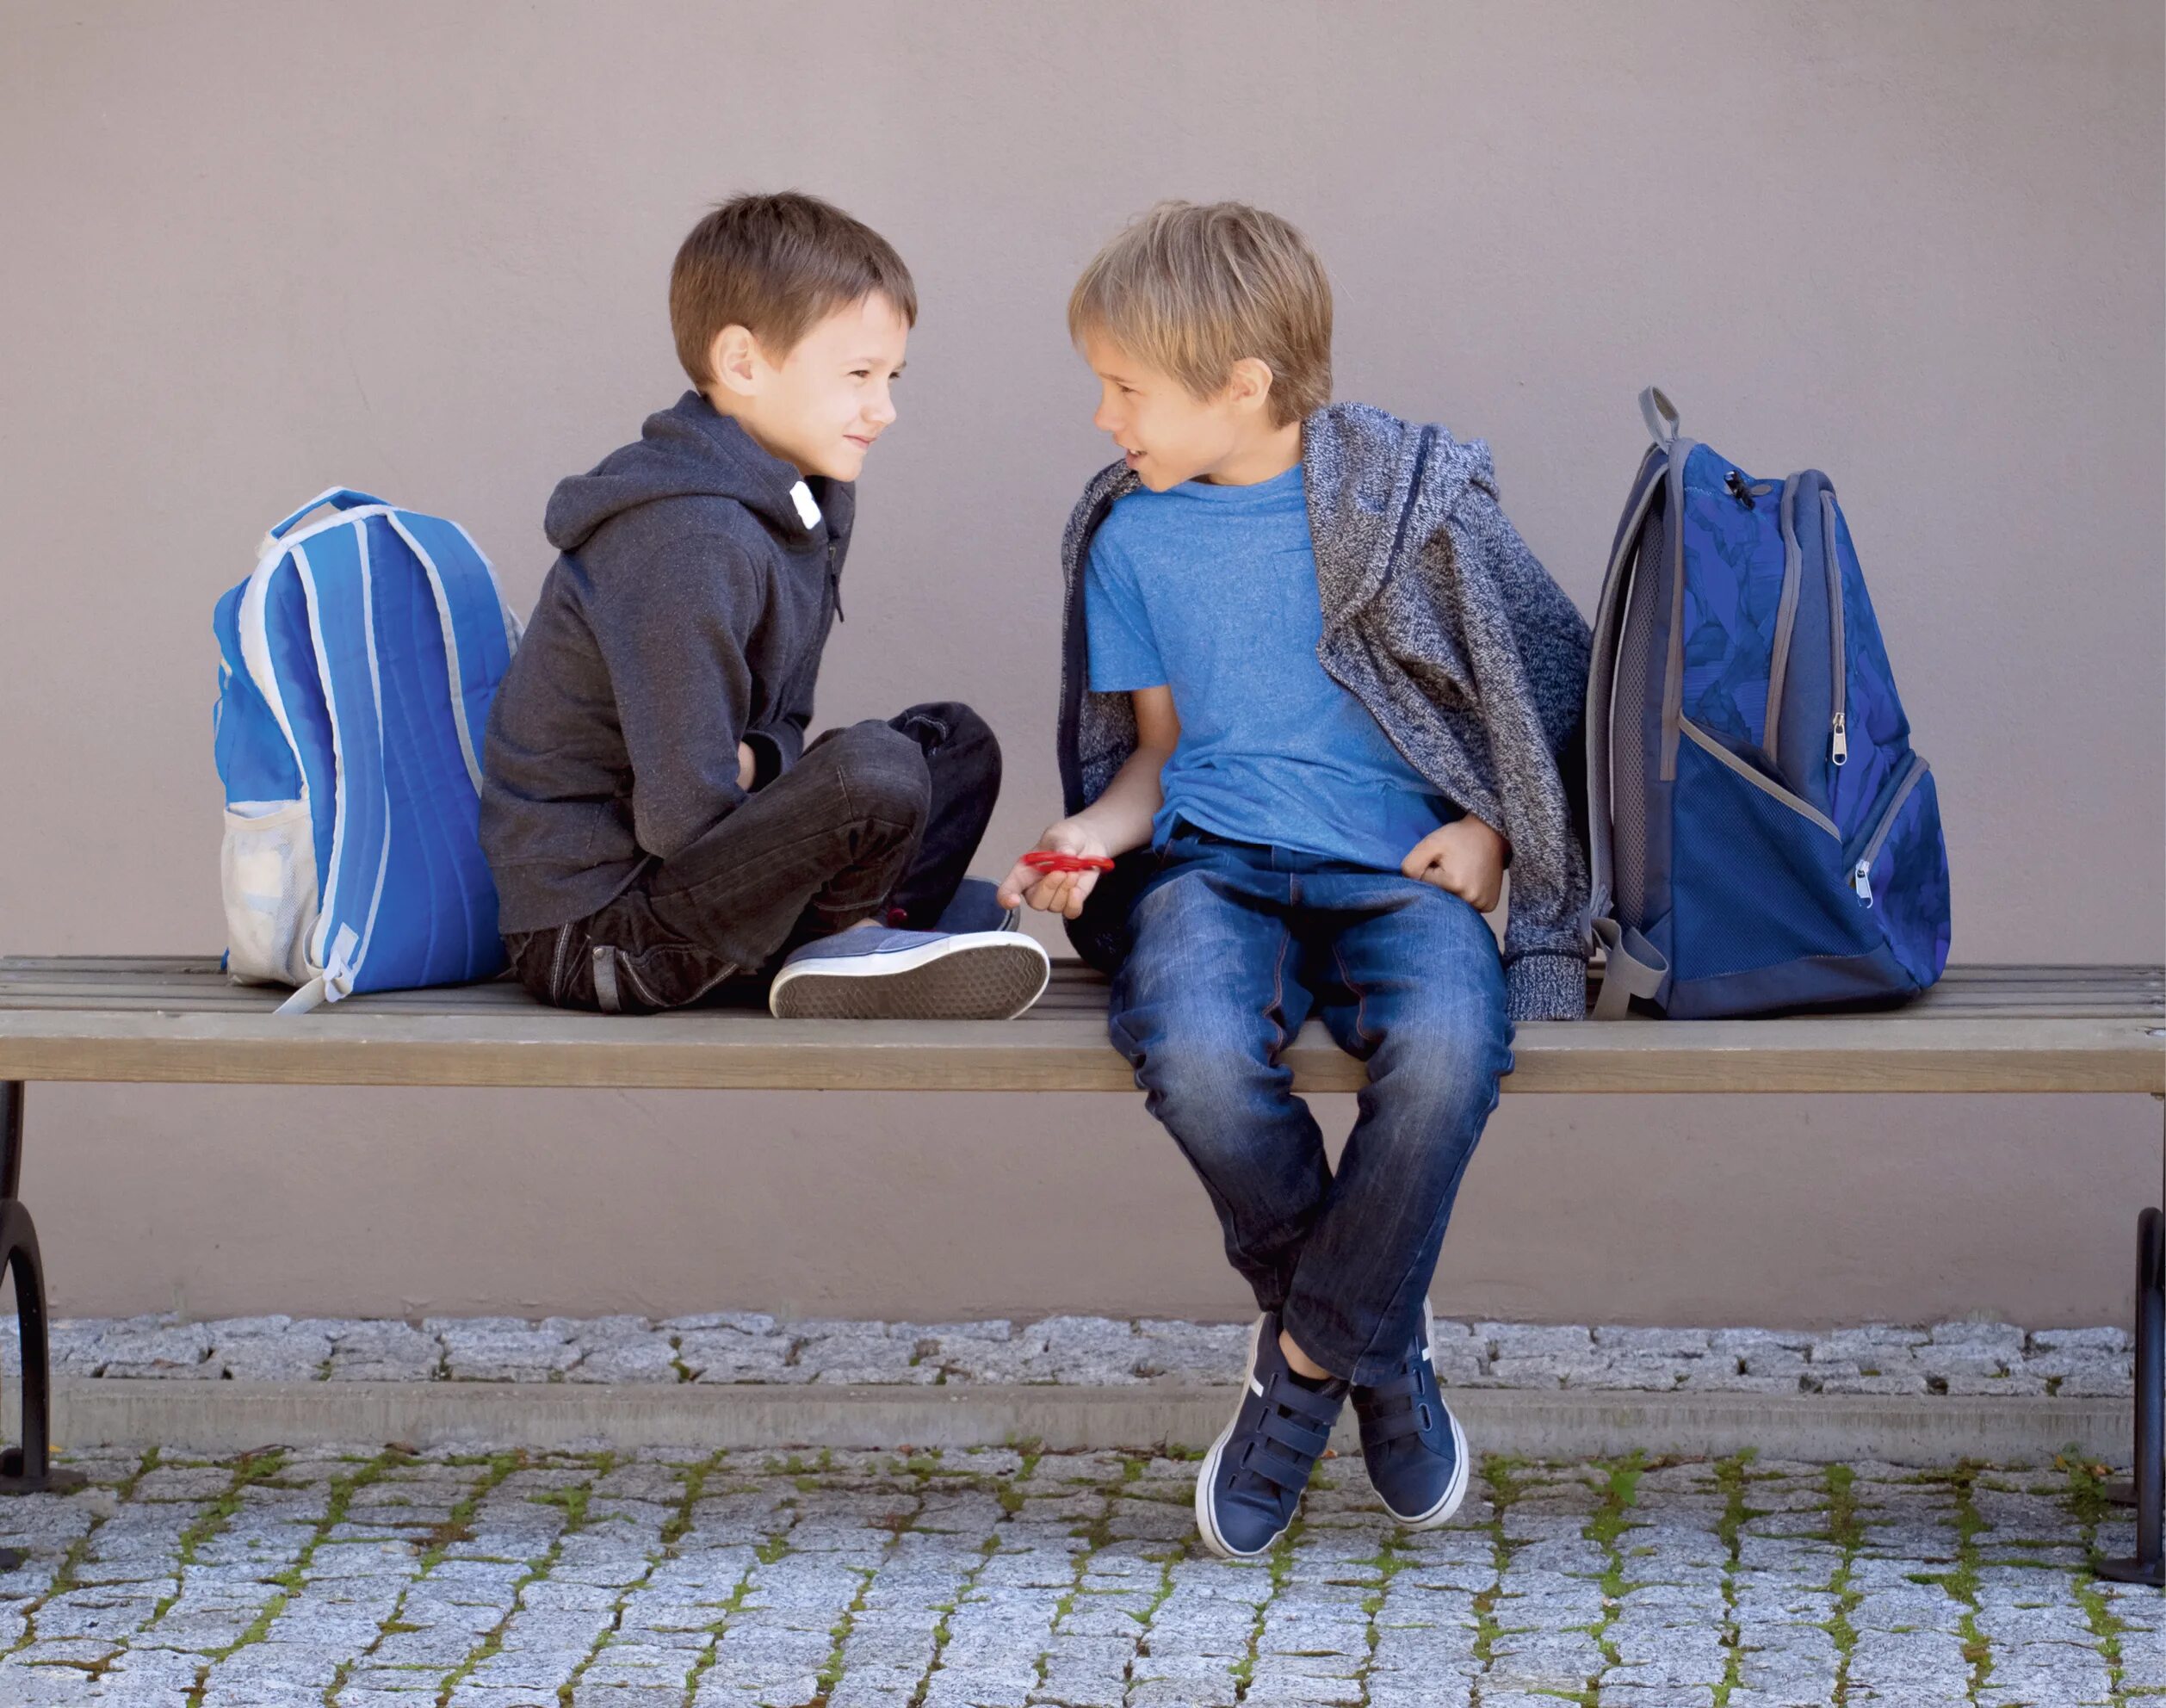 В столовой уже стояли два мальчика. Два мальчика с рюкзаками. Школьник с рюкзаком. Два мальчика разговаривают в школе. Школьник с рюкзаком сидит.